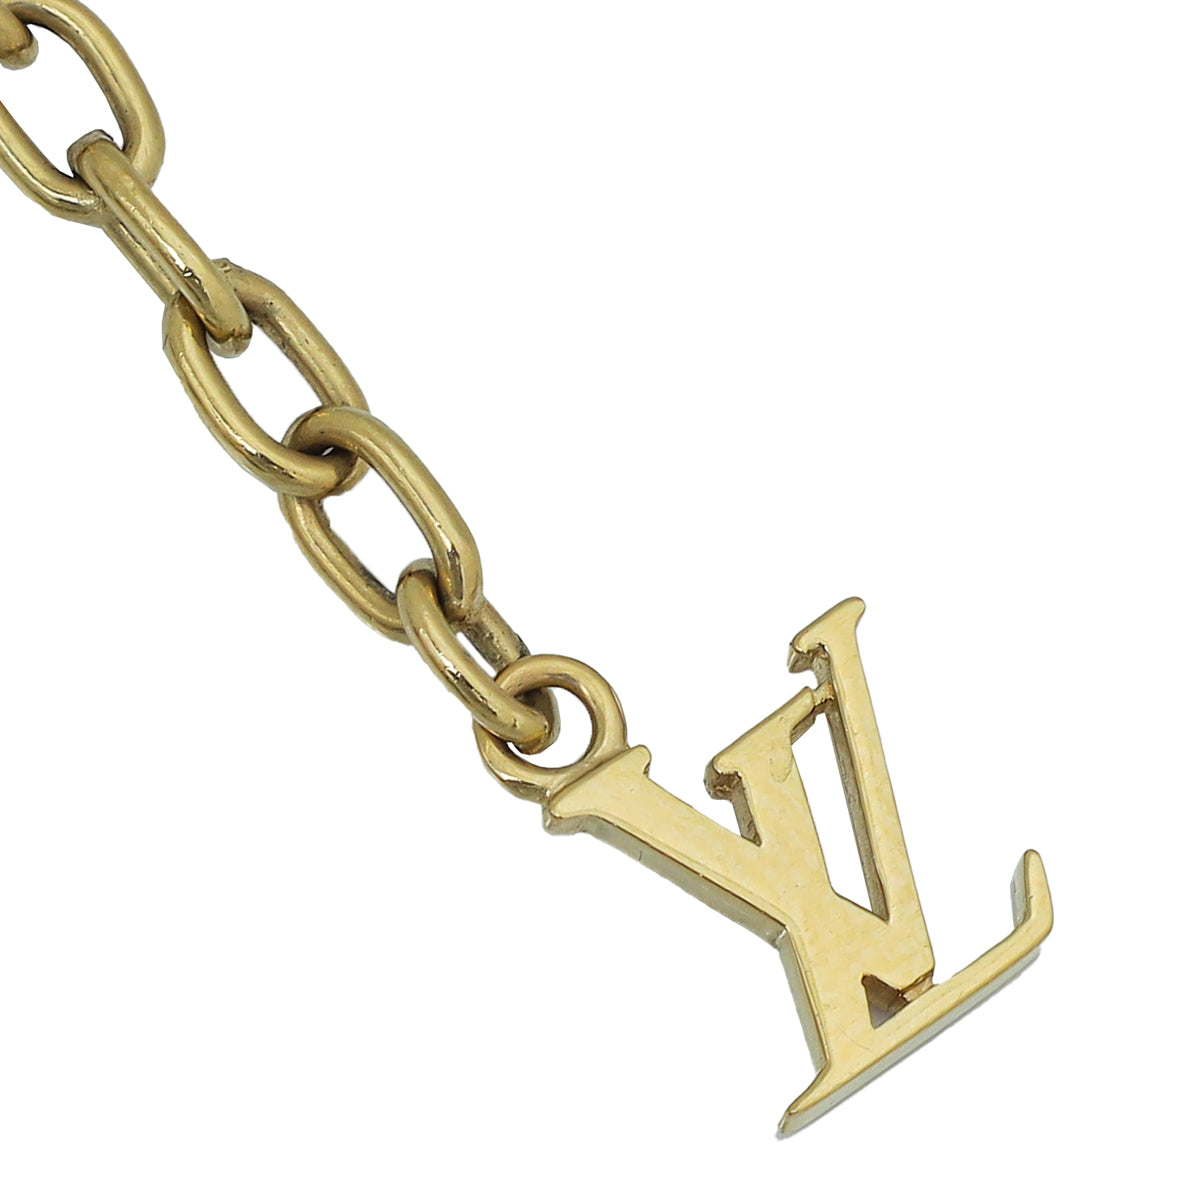 Louis Vuitton Multicolor Swarovski Crystal Gamble Necklace